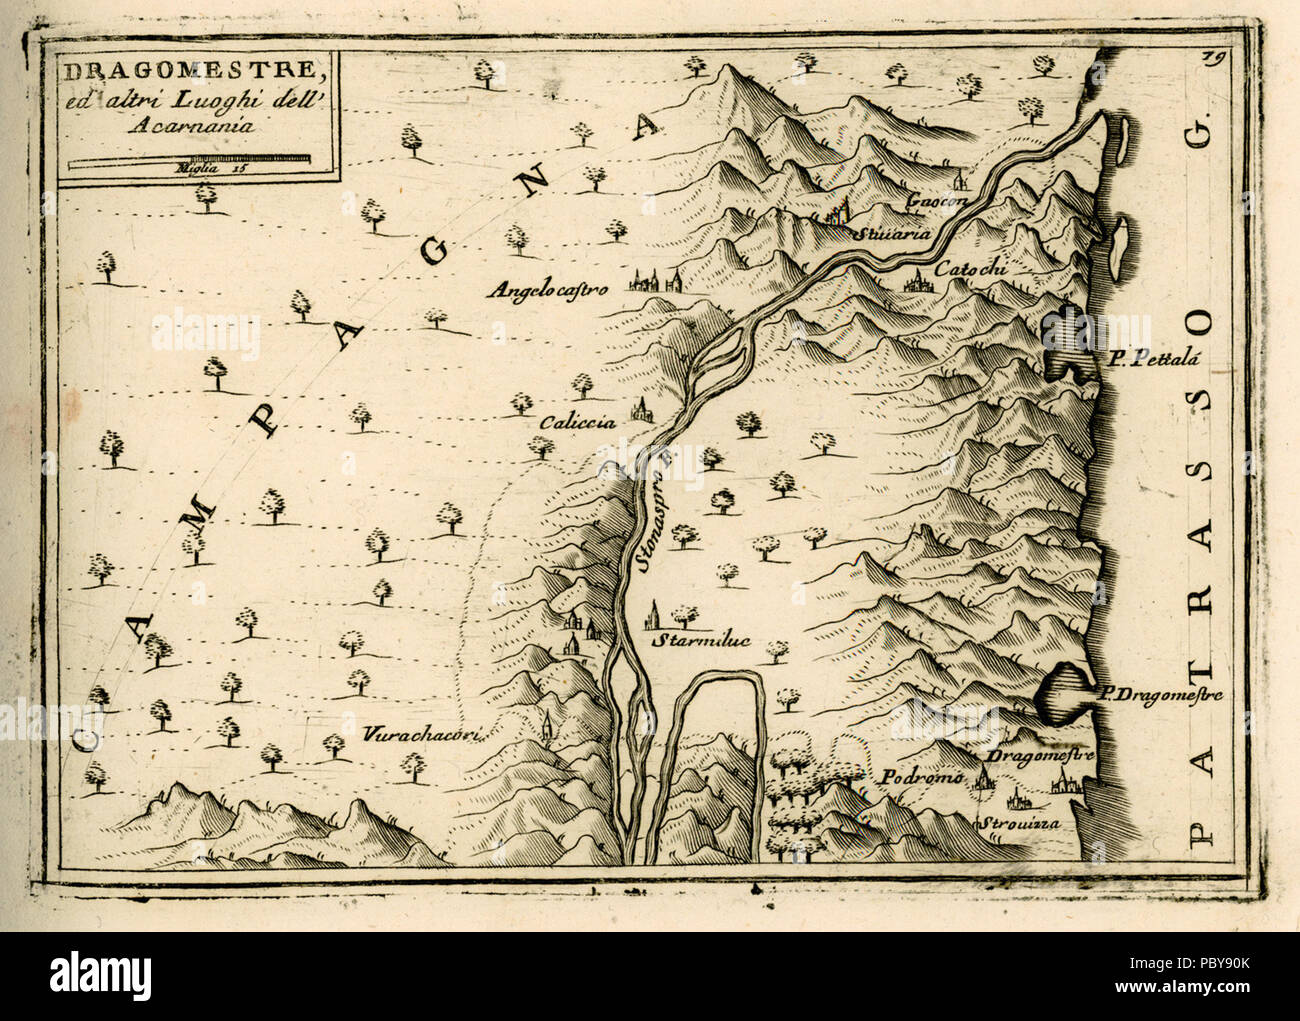 170 Dragomestre ed altri luoghi dell'Acarnania - Coronelli Vincenzo - 1688 Stock Photo